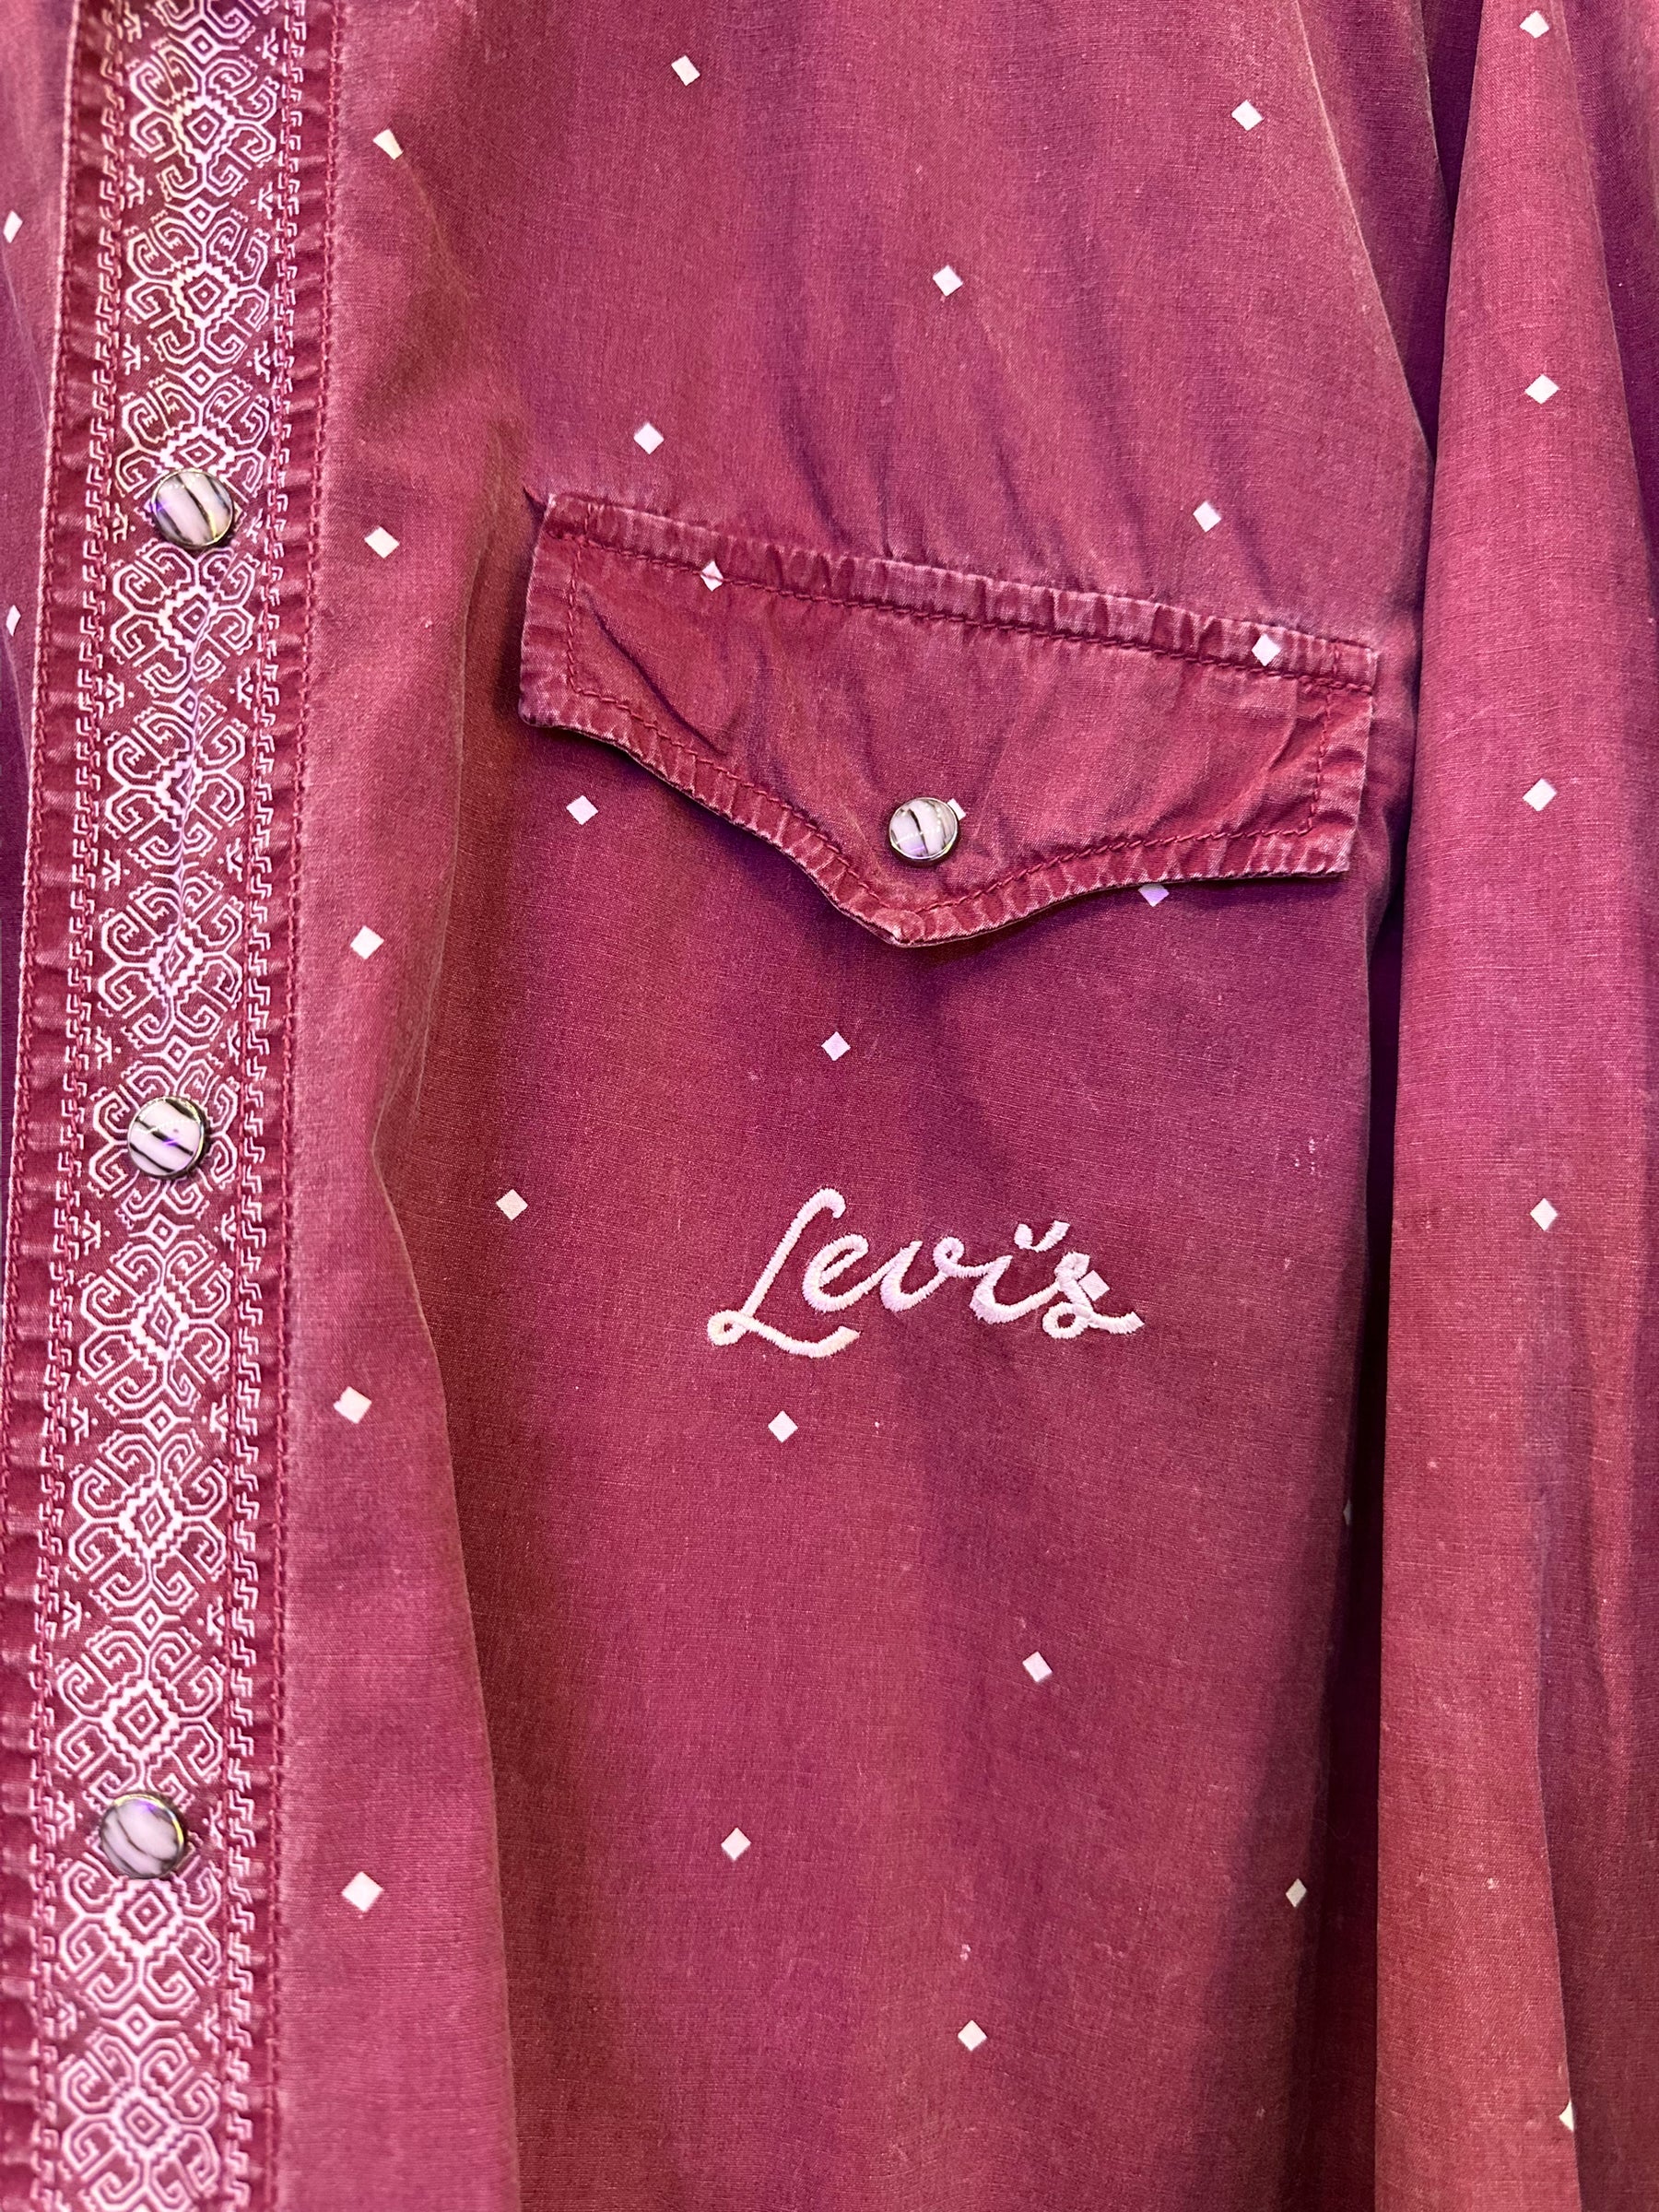 Vintage 80's Levi's shirt